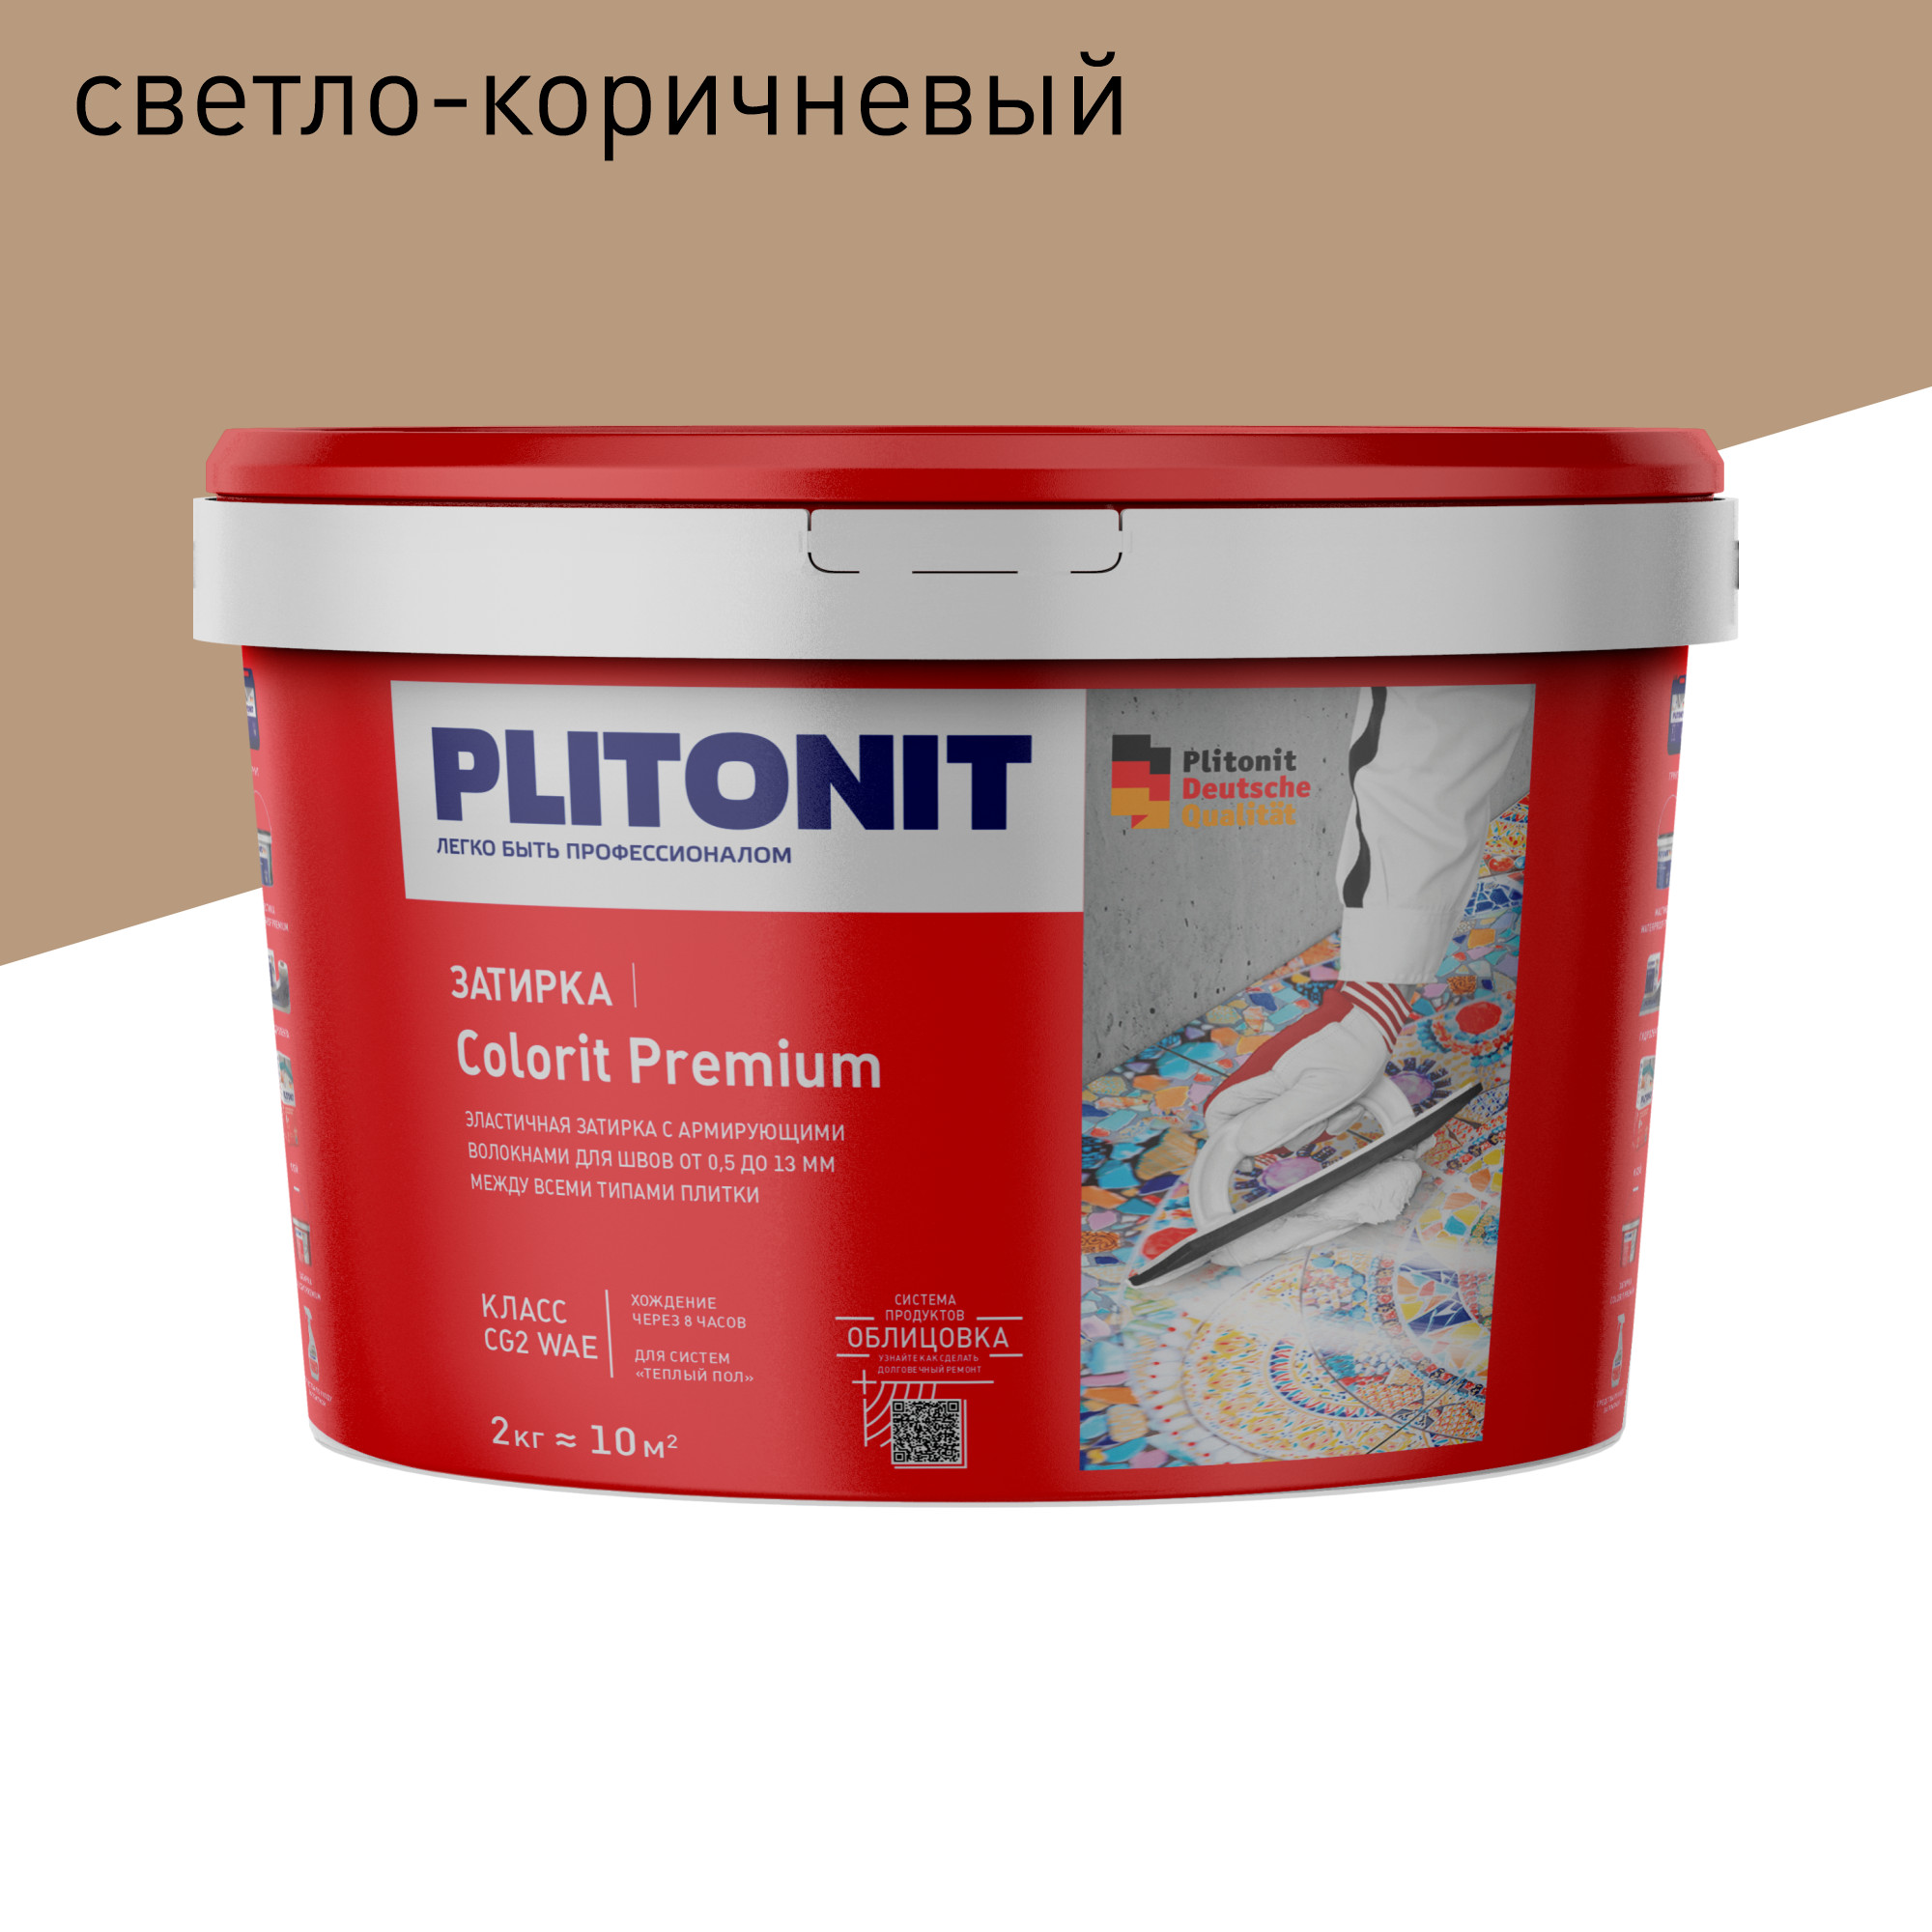 Затирка PLITONIT Colorit Premium светло-коричневая 2 кг затирка эпоксидная plitonit colorit easyfill серебристо серая 2 кг